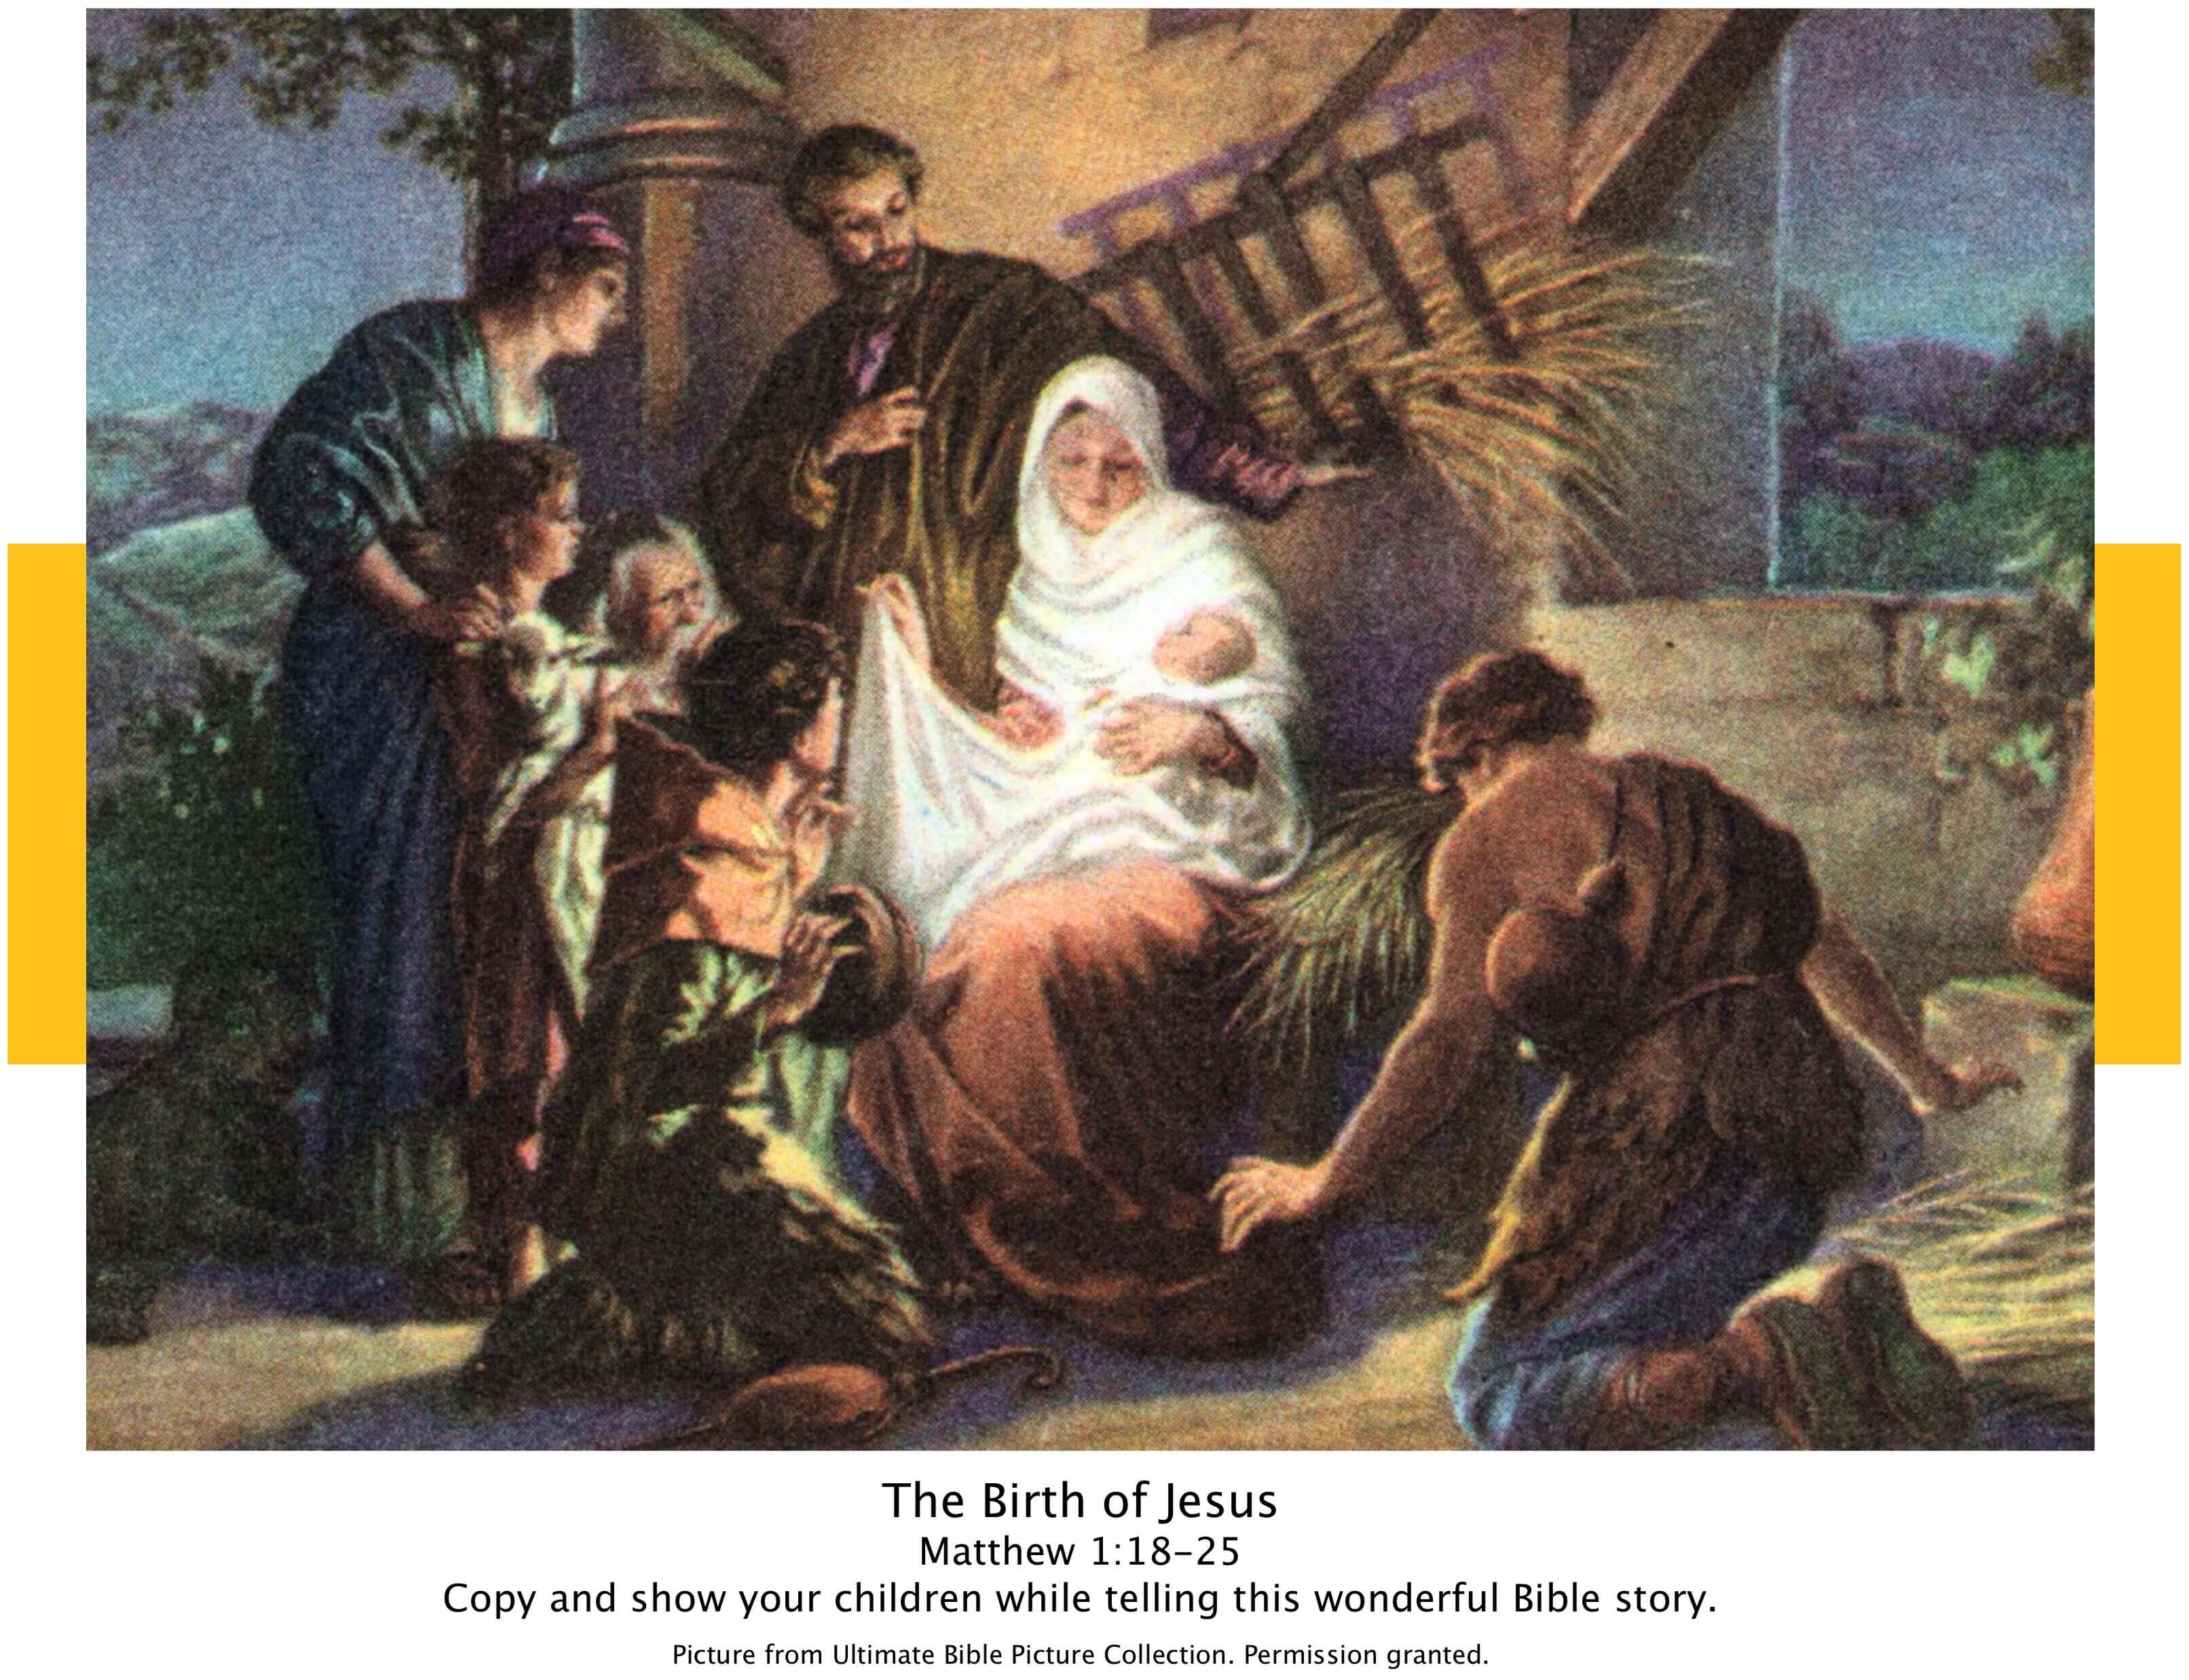 free-bible-images-jesus-birth-free-bible-images-printable